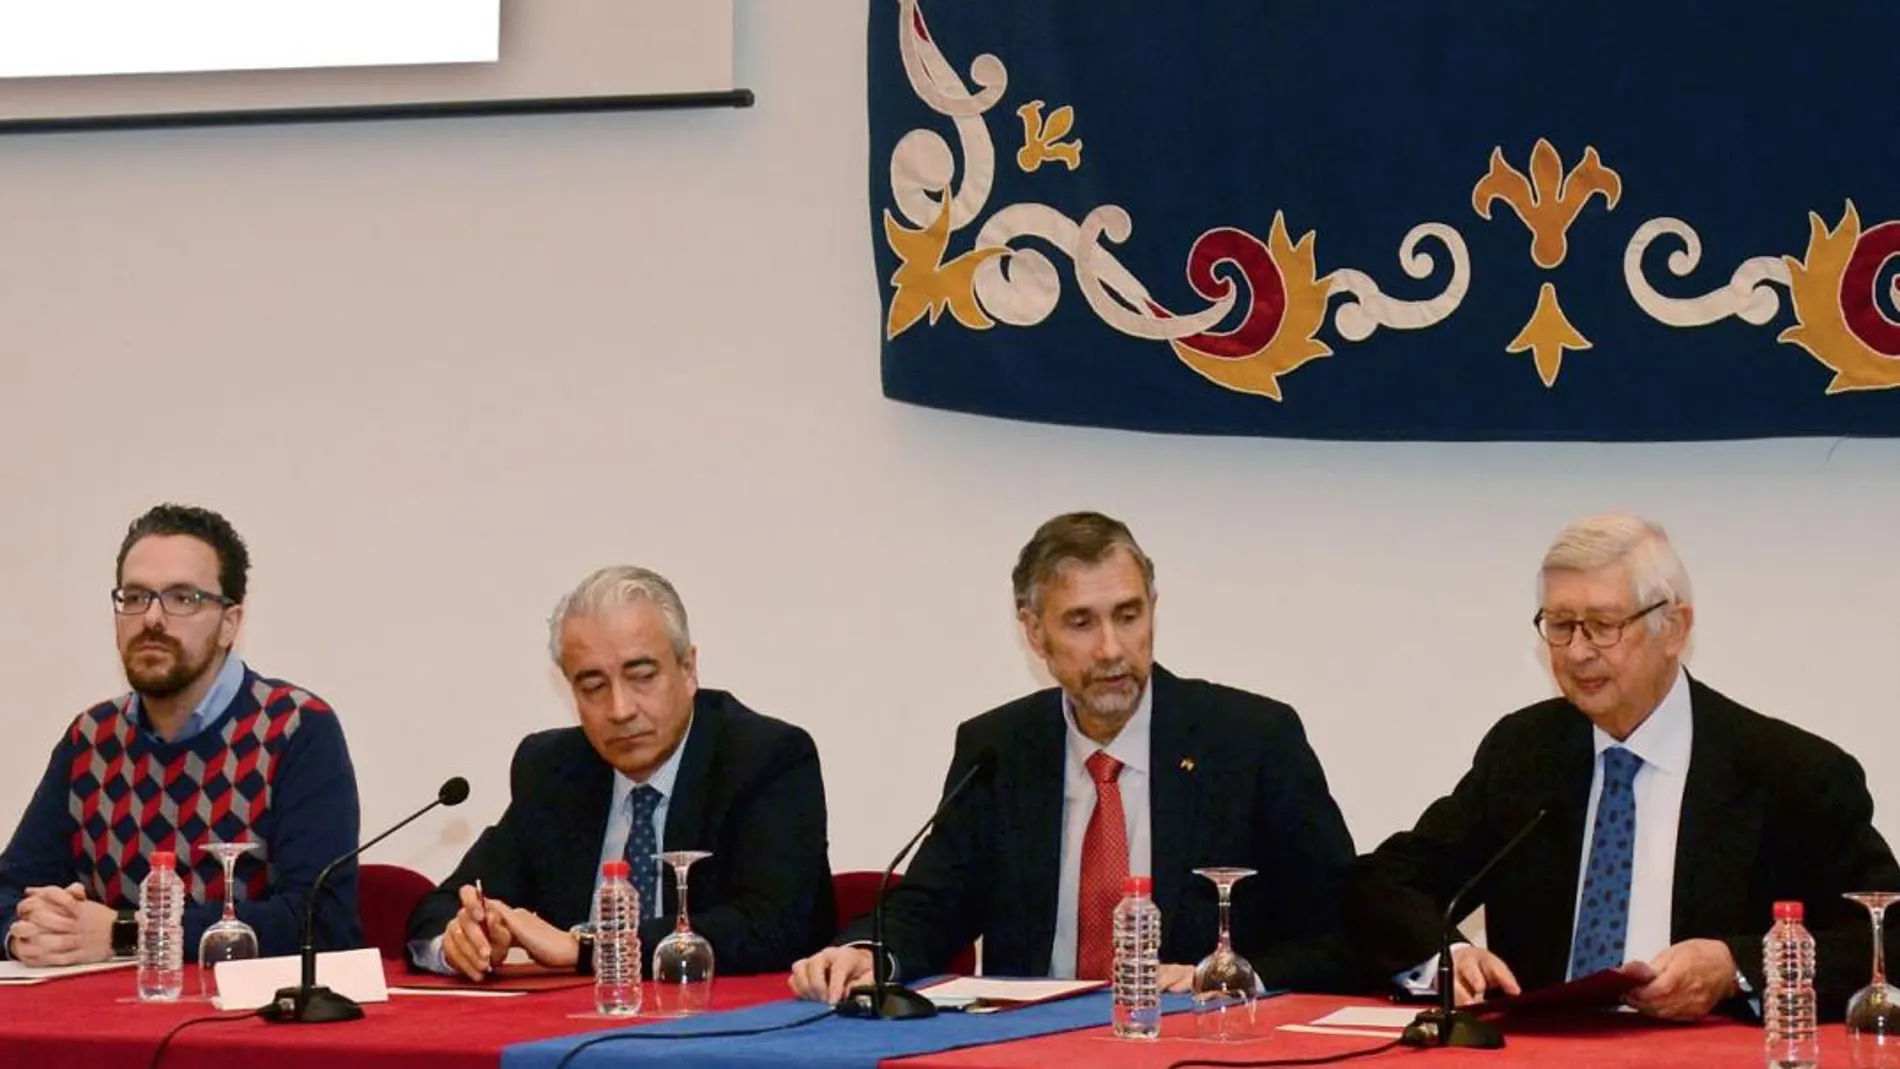 El viceconsejero Mariano Gredilla junto al rector Manuel Pérez Mateos y Rafael Puyol Antolín, entre otros, en la Universidad de Burgos